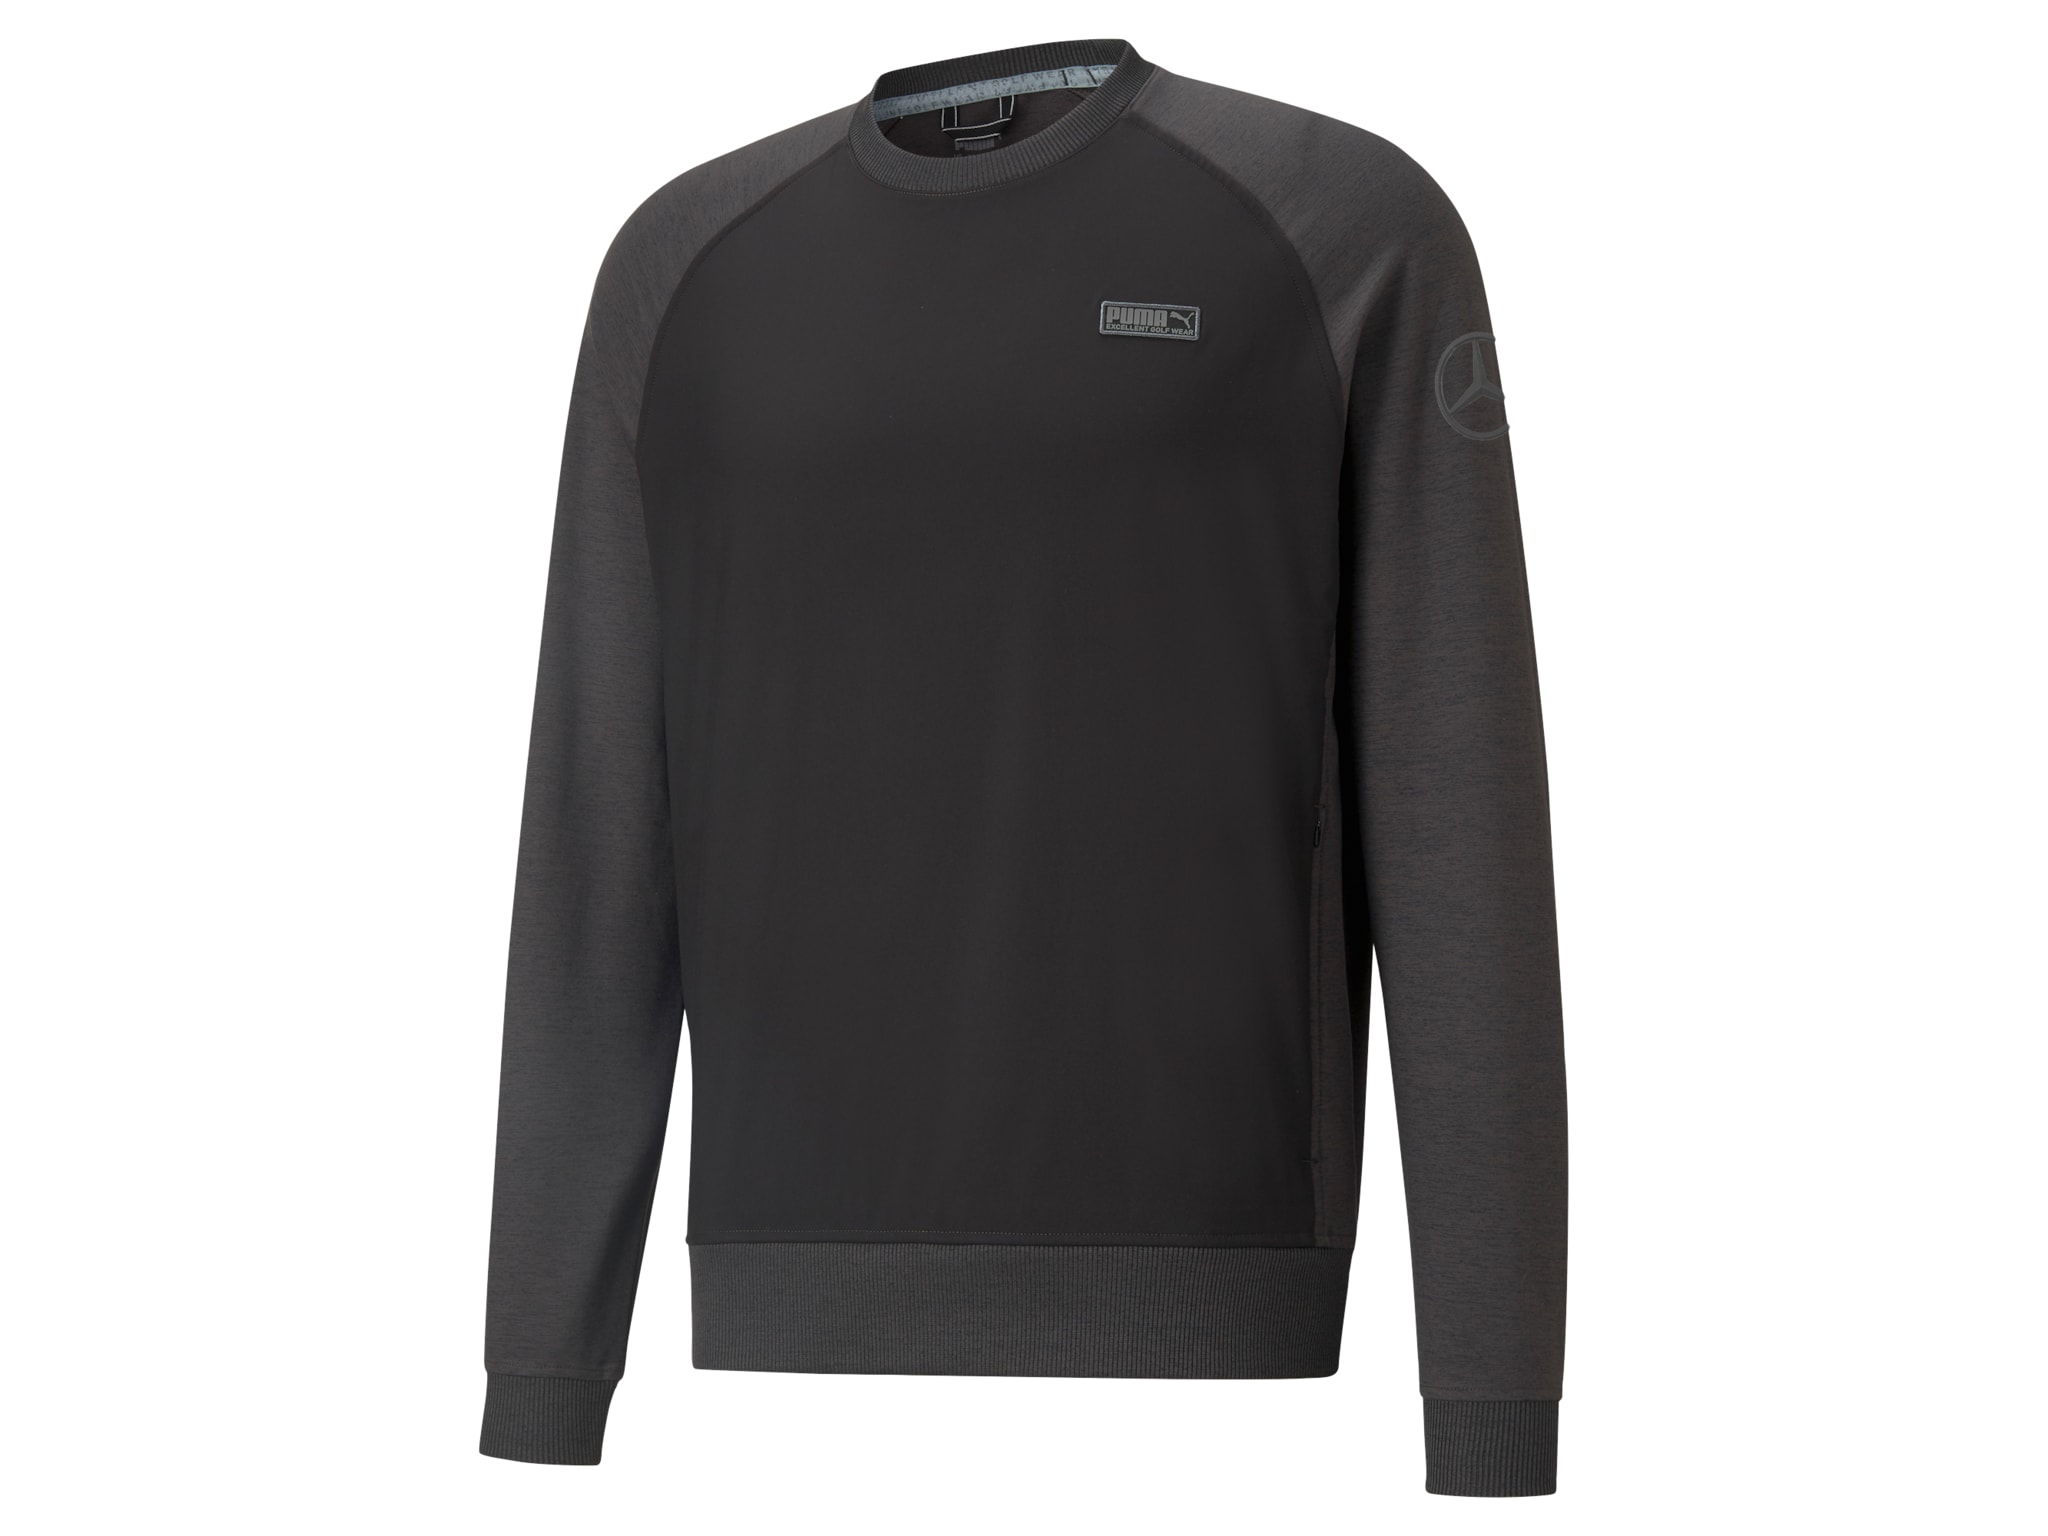 Golf-Sweater Herren - schwarz / dunkelgrau, XL